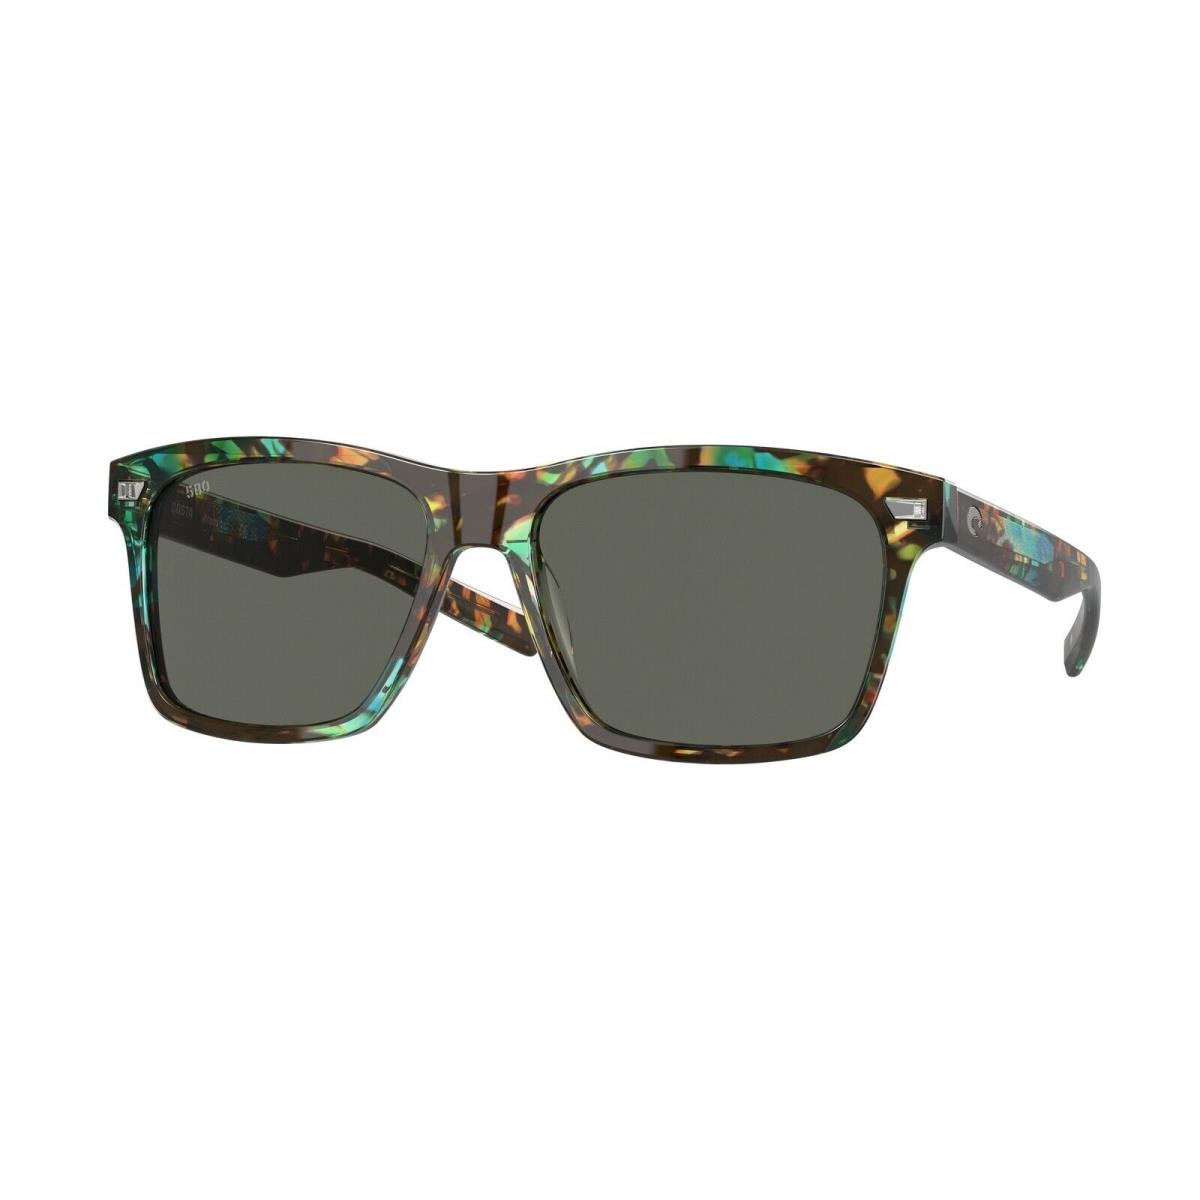 Costa Del Mar Aransas Sunglasses Shiny Ocean Tortoise Frame w/ Gray Glass Lens - Frame: , Lens: Gray